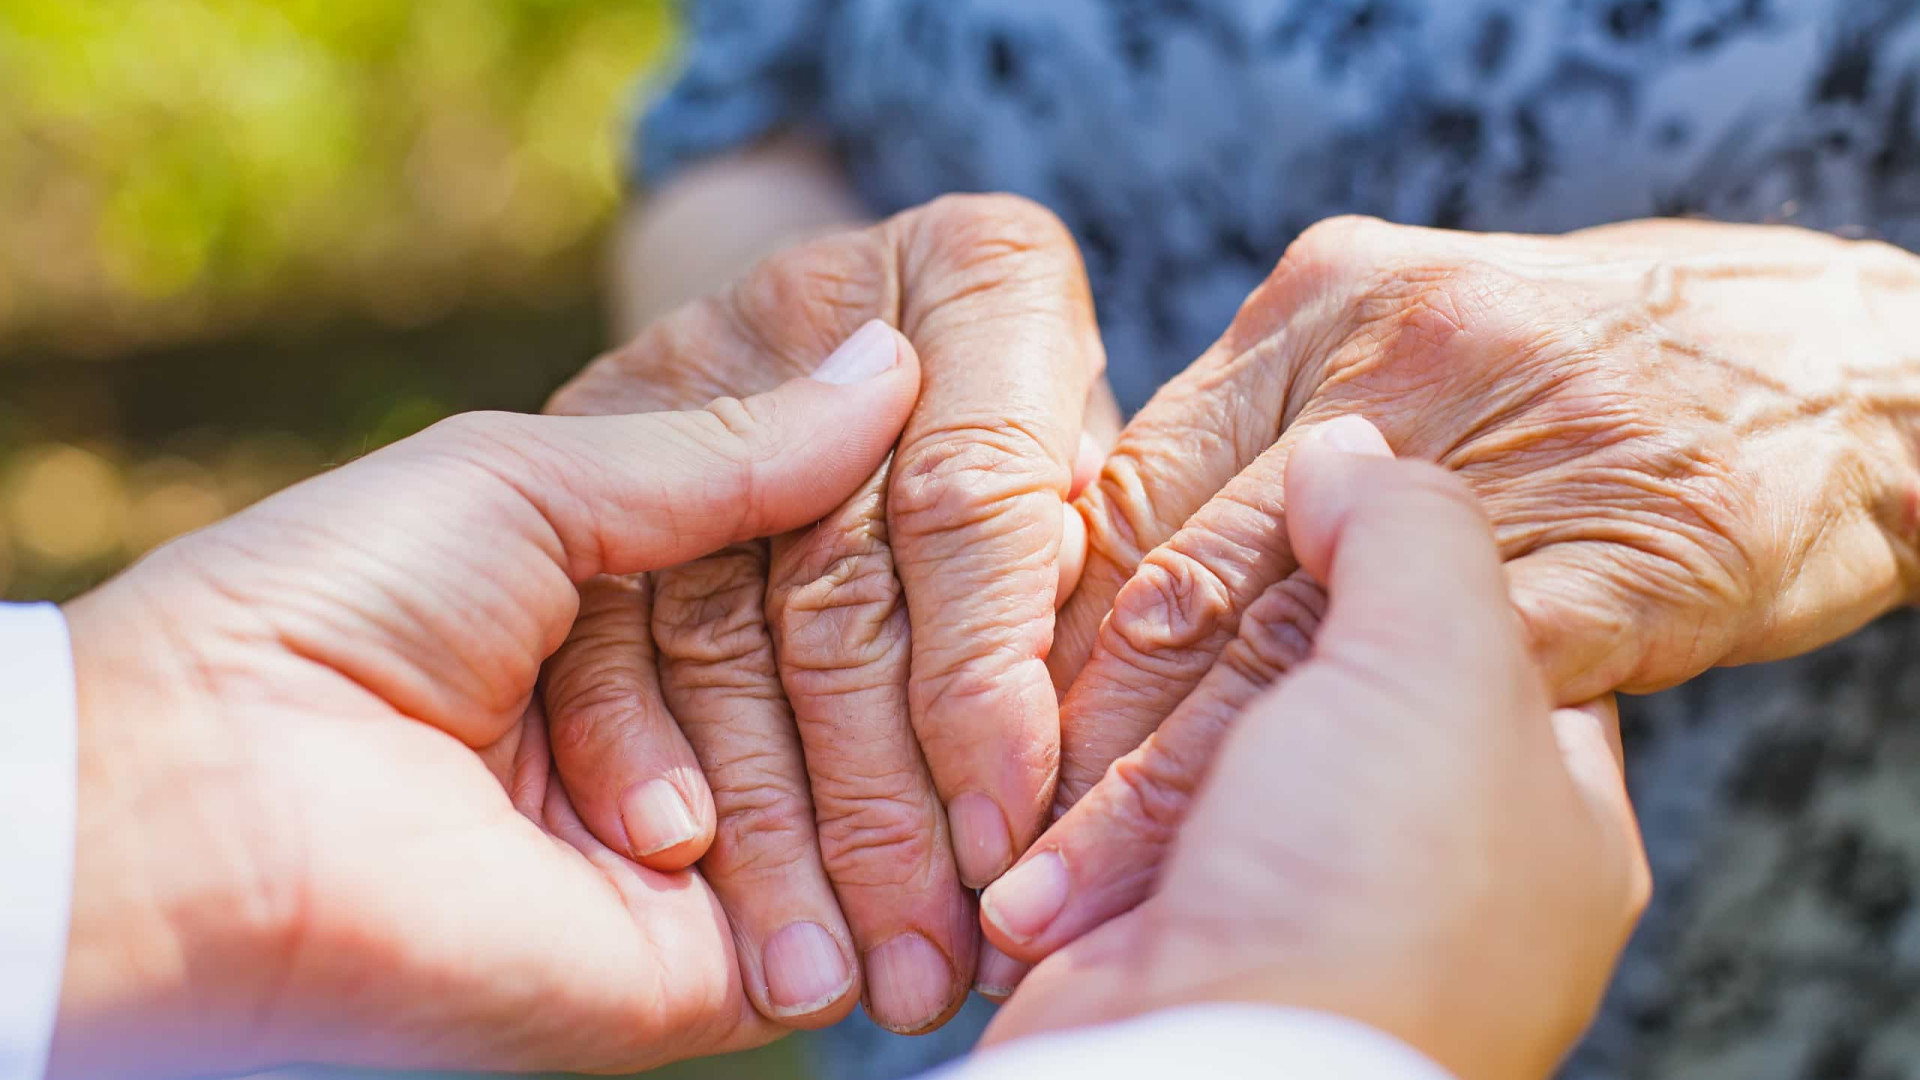 Novas terapias prometem maior qualidade de vida a quem tem Parkinson